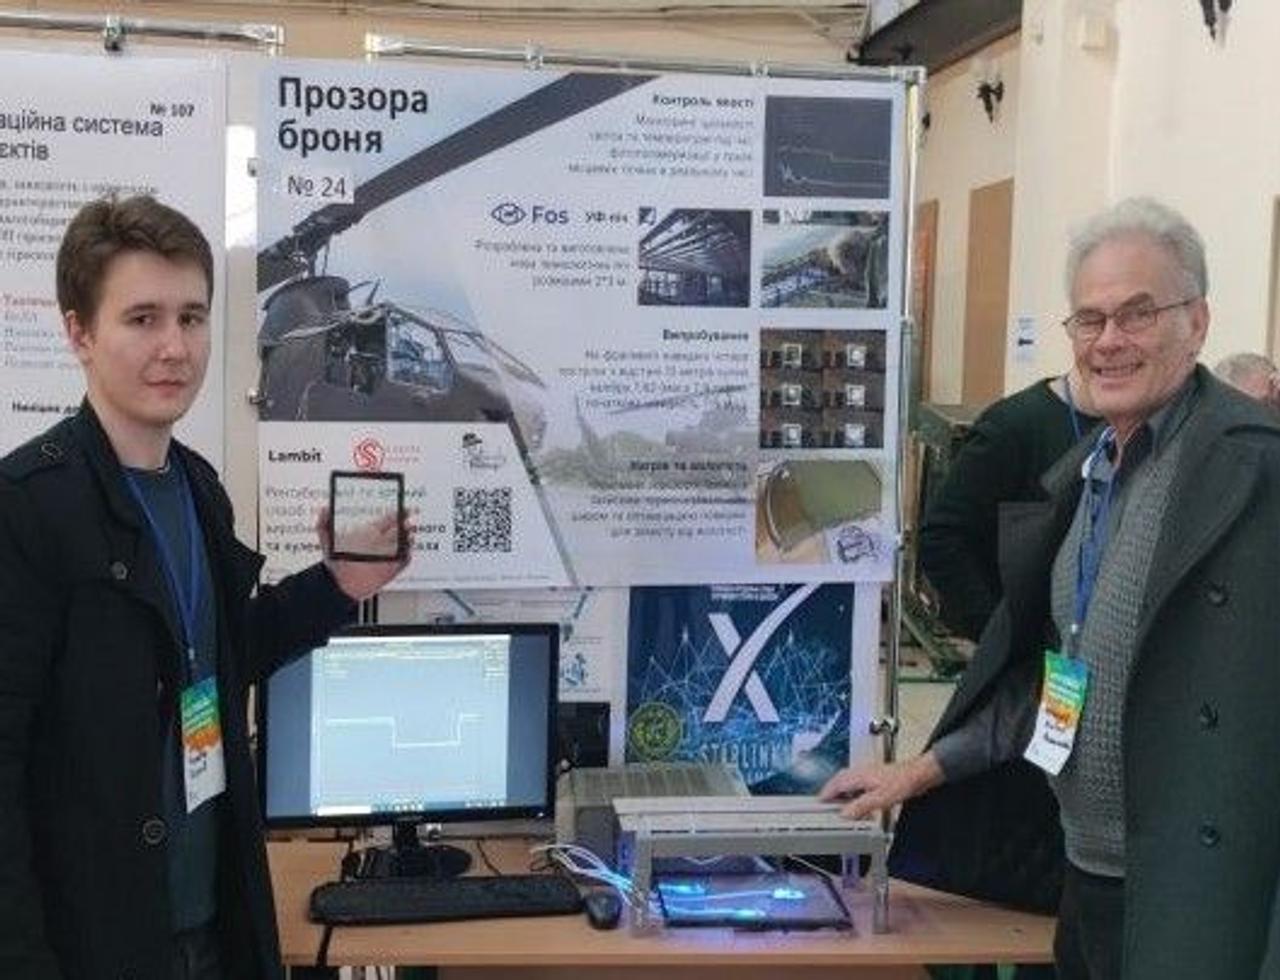 Украинские ученые создали уникальную технологию производства «прозрачной брони»